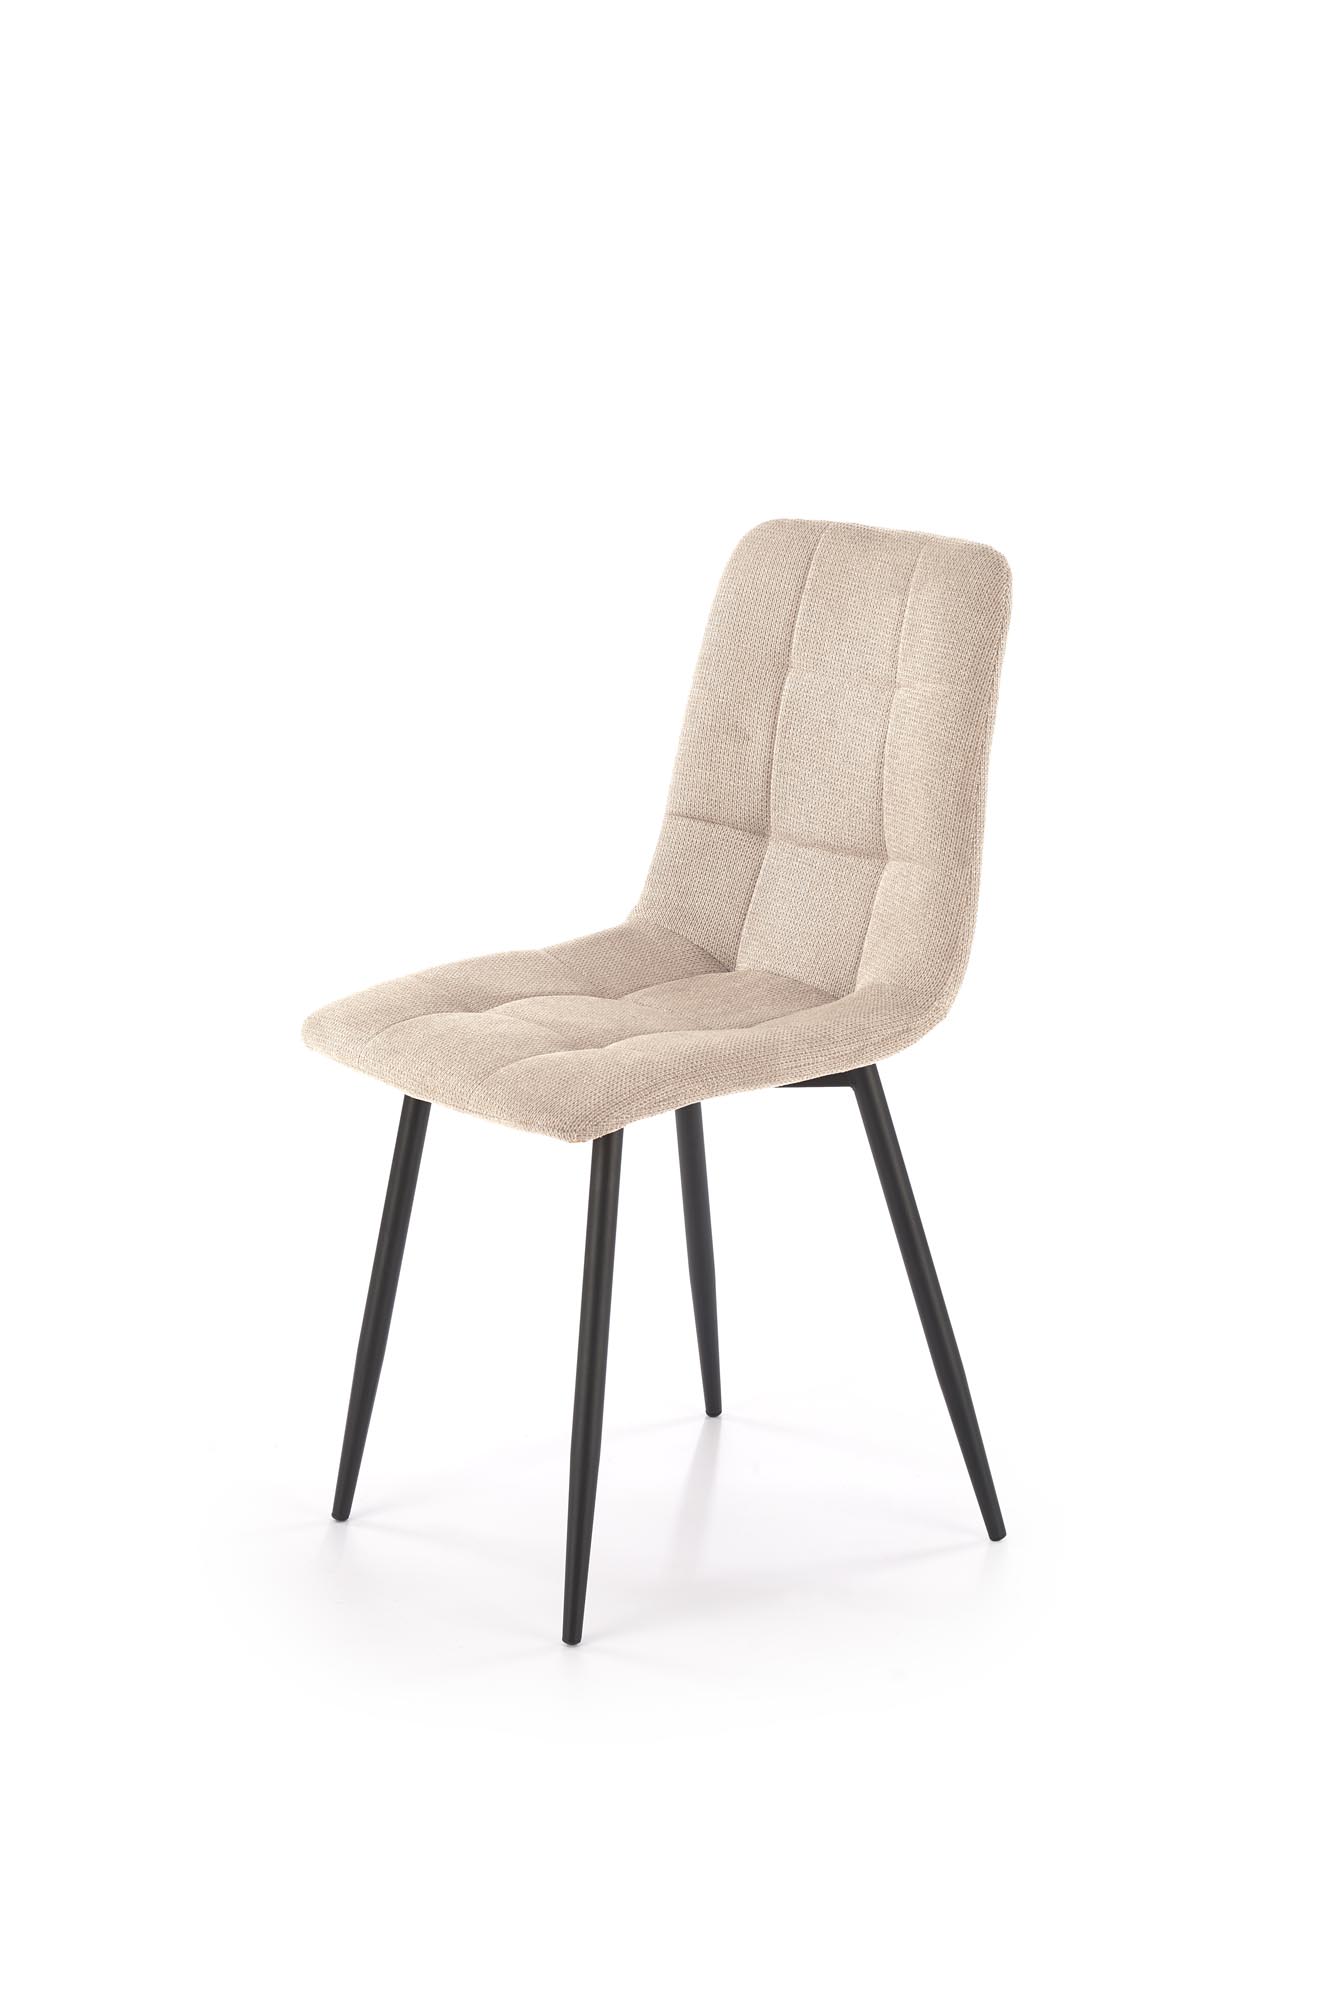 Krzesło tapicerowane K560 - beżowy / czarne nogi  Krzesło tapicerowane K560 - beżowy / czarne nogi 